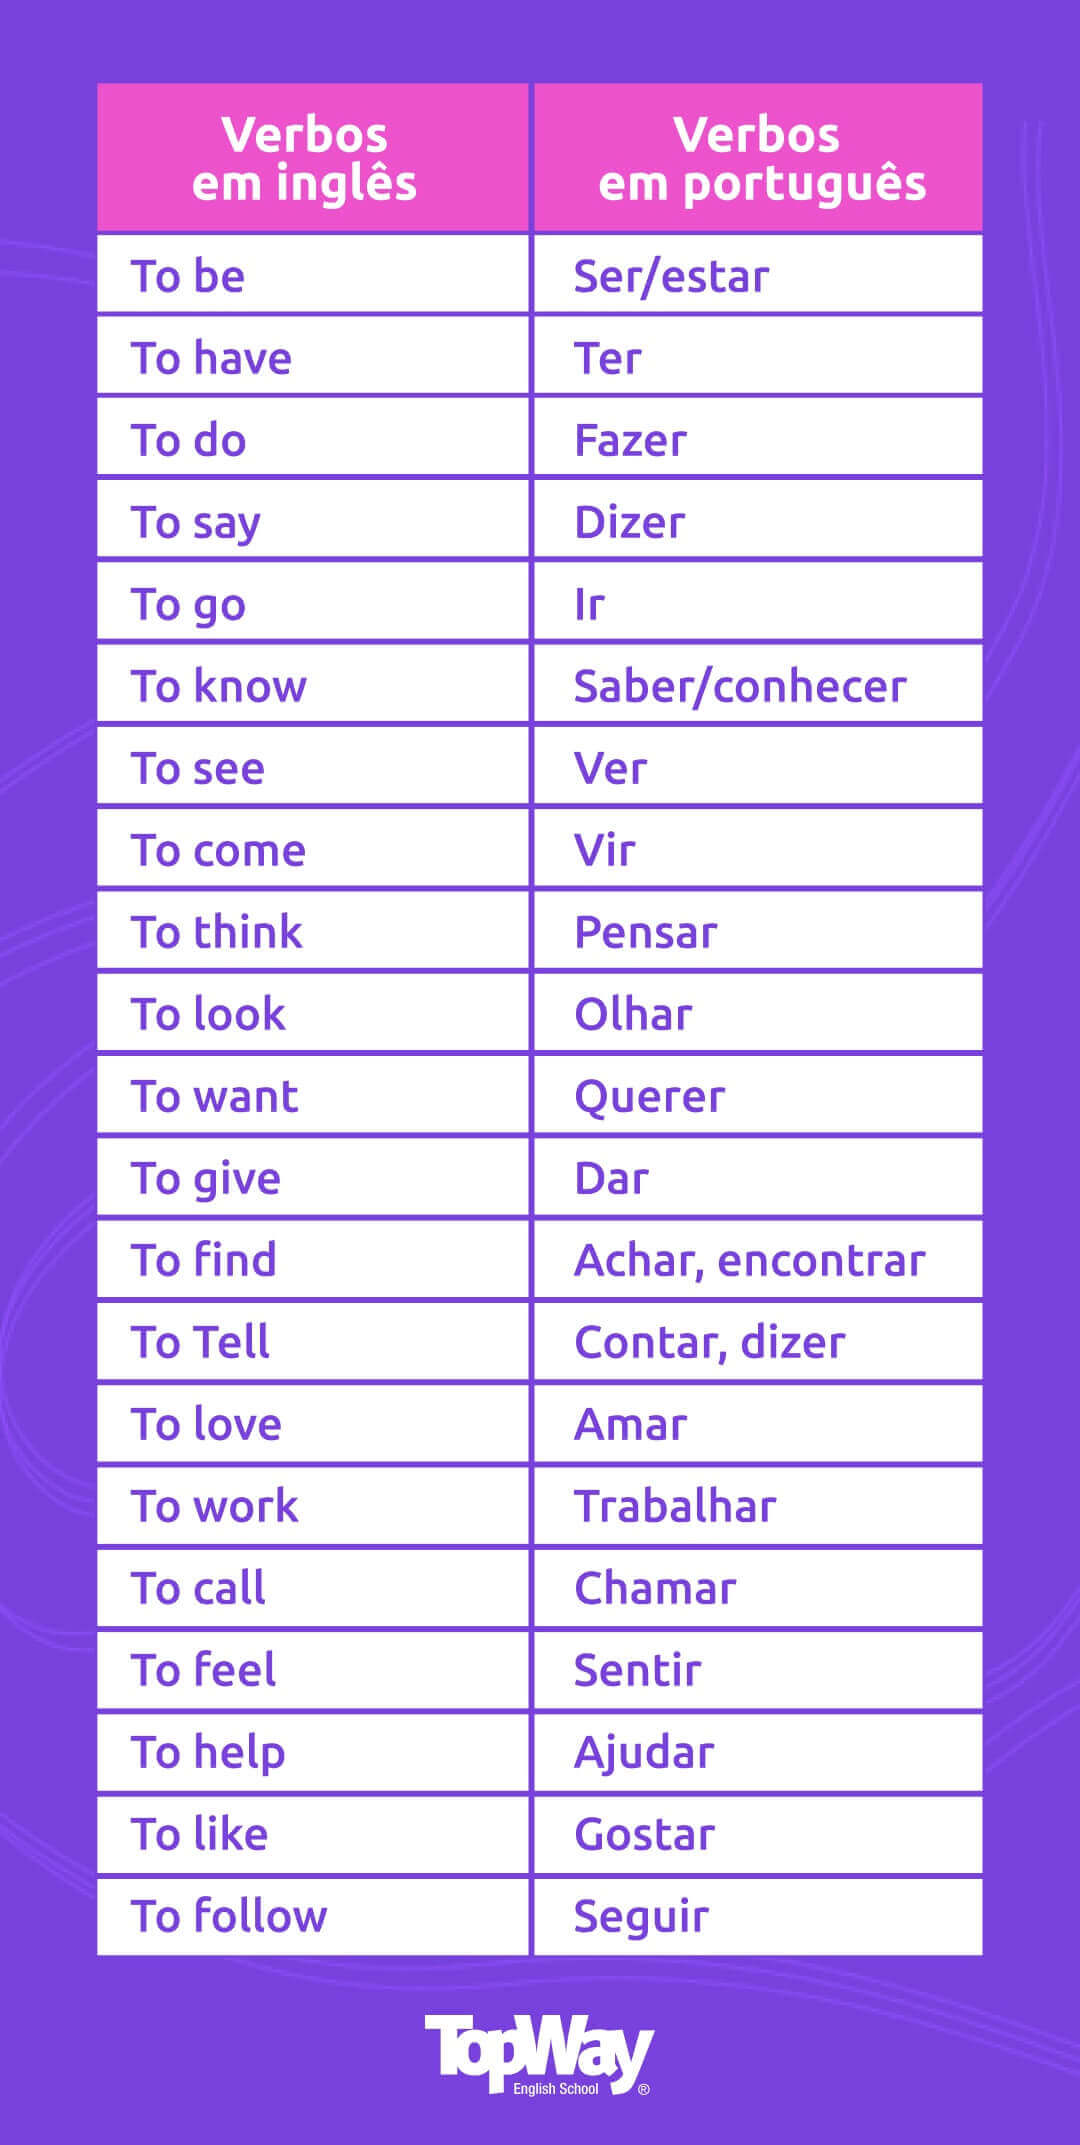 Como Dizer DE CARA em inglês :: Melhore Seu Vocabulário